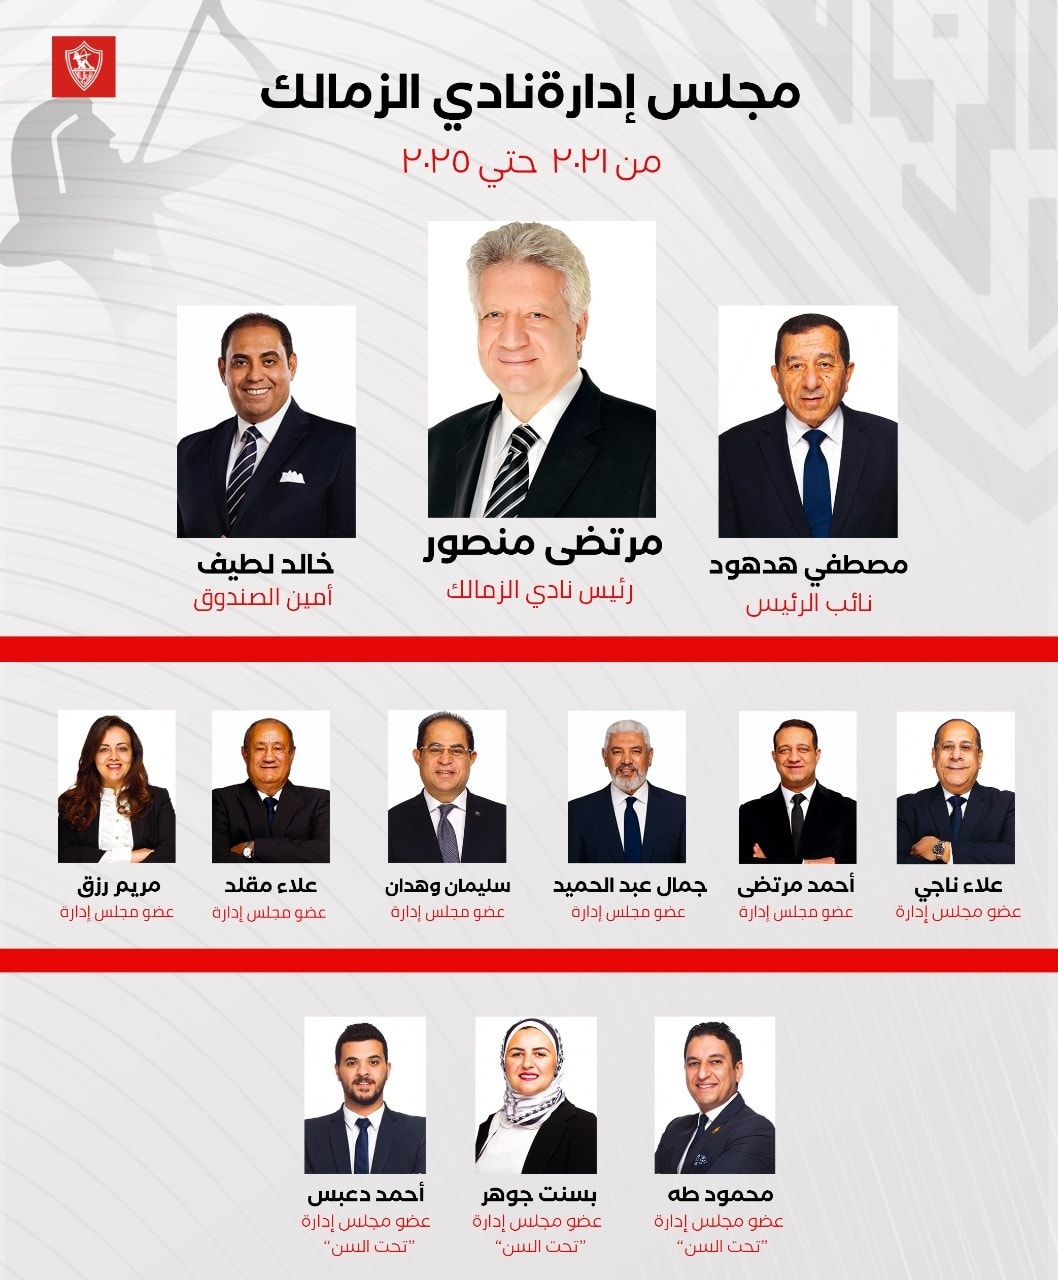 صورة تشكيل مجلس إدارة الزمالك الجديد 2022 بعد فوز مرتضى منصور